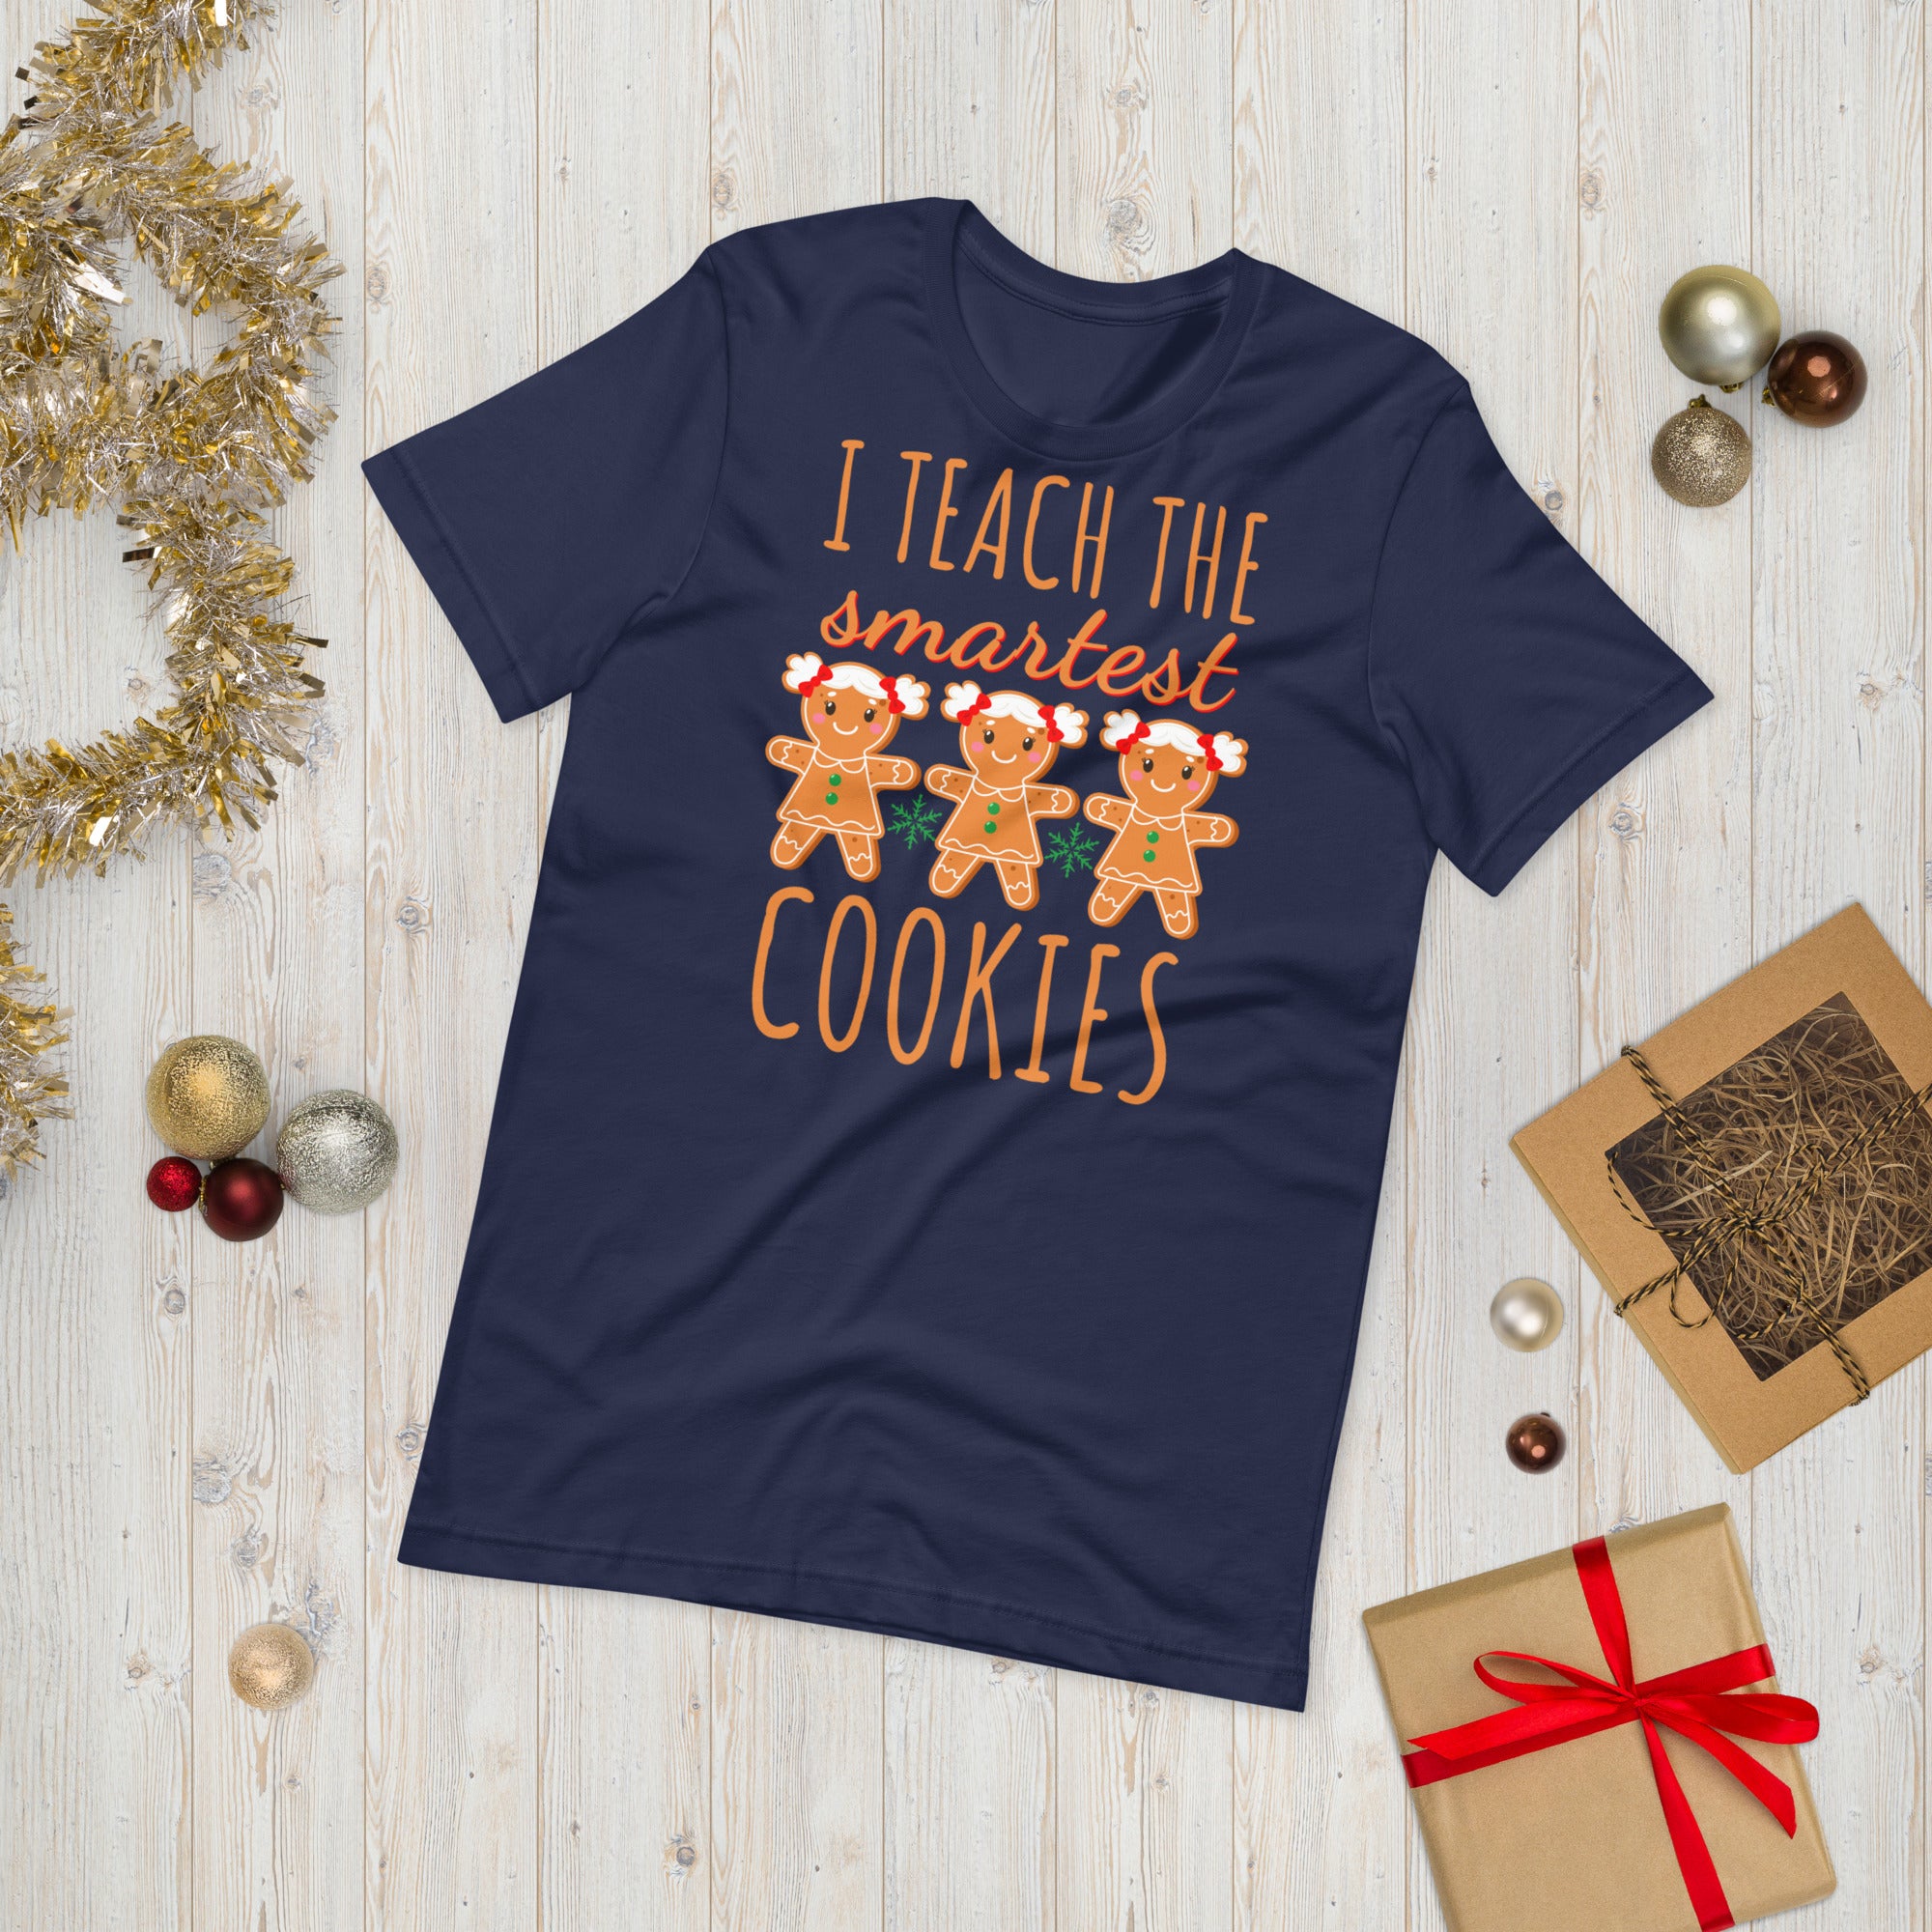 Teacher Christmas Shirt, I Teach the Smartest Cookies Shirts, Christmas Teacher T Shirt, Christmas Shirt, Teacher Christmas Tee, Xmas Gifts